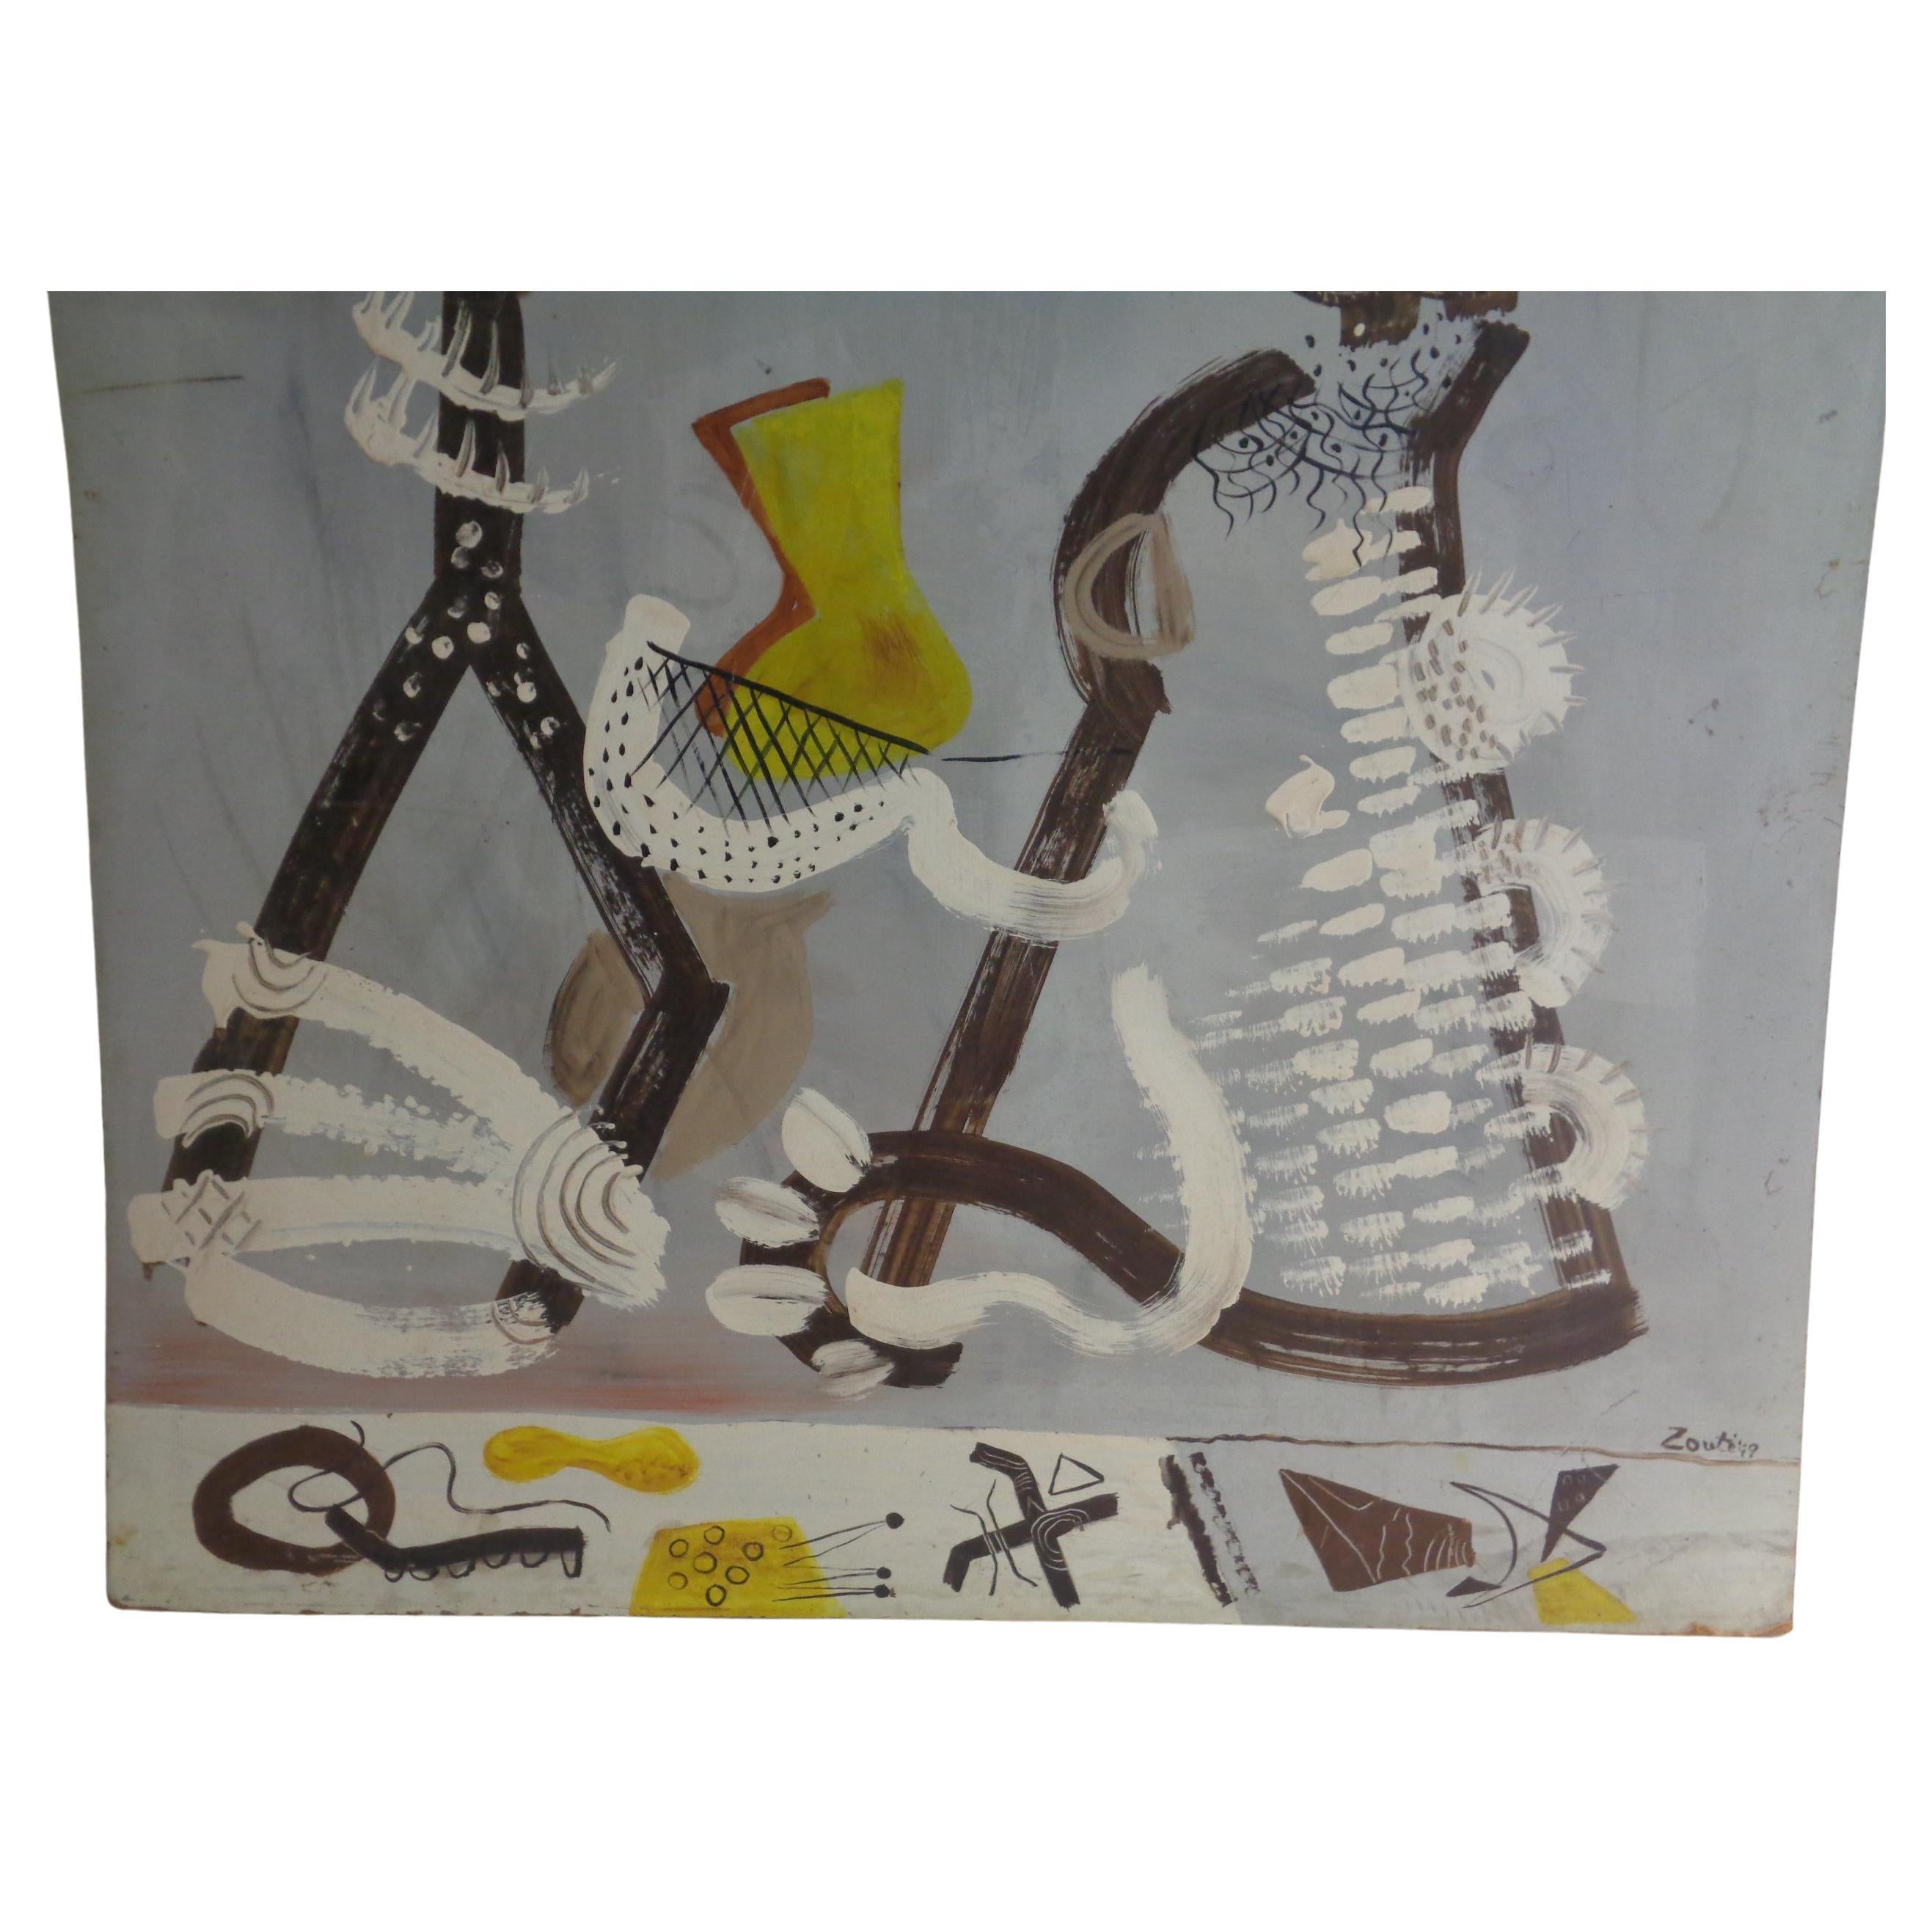 Abstrakt-impressionistisches figurales Gemälde, Zoute 1949 (amerikanisch)